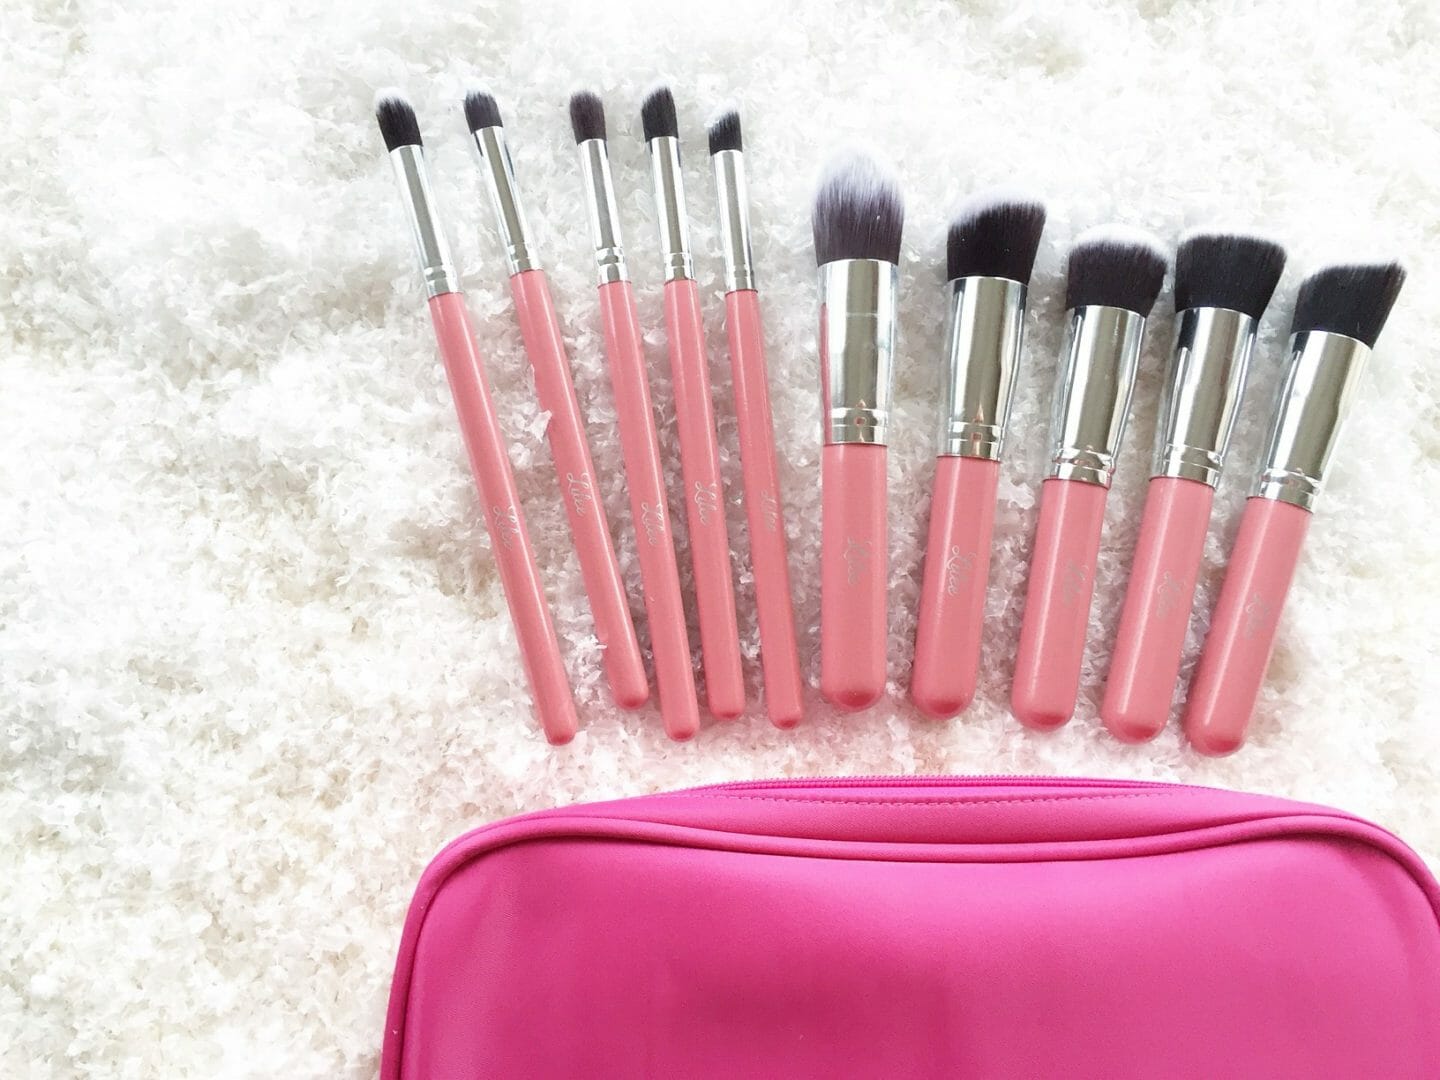 Beautiful set of makeup brushes